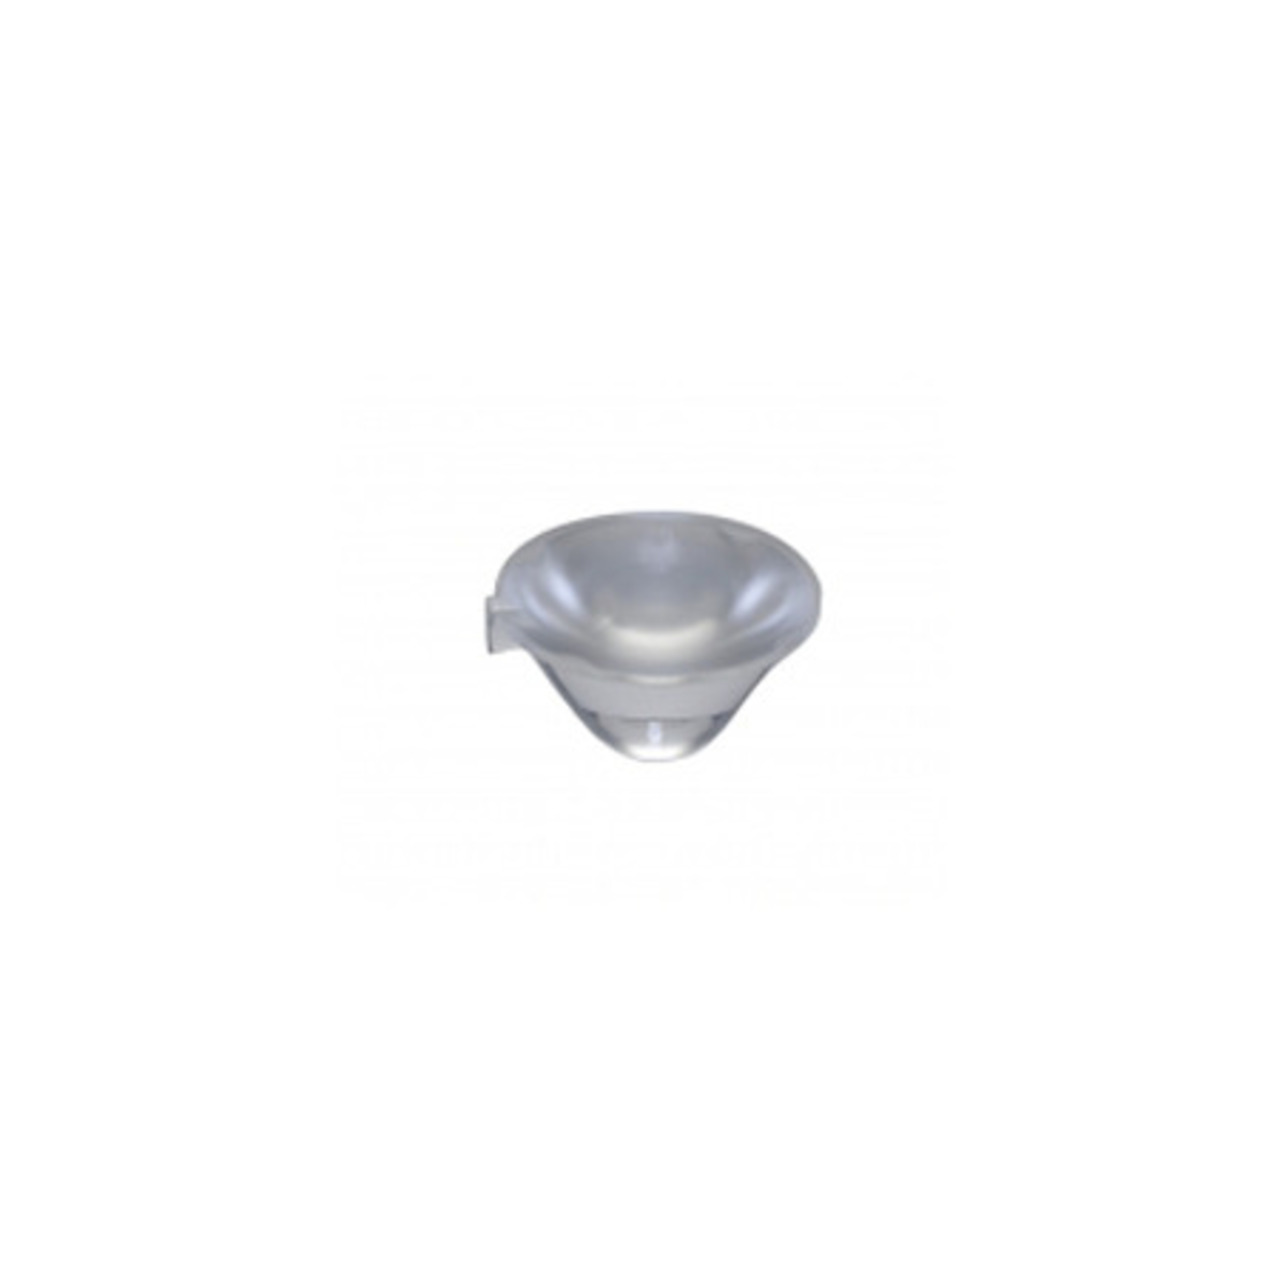 Optik für P5II-LED- Abstrahlwinkel 23-9- Durchmesser 26-5 mm unter Komponenten